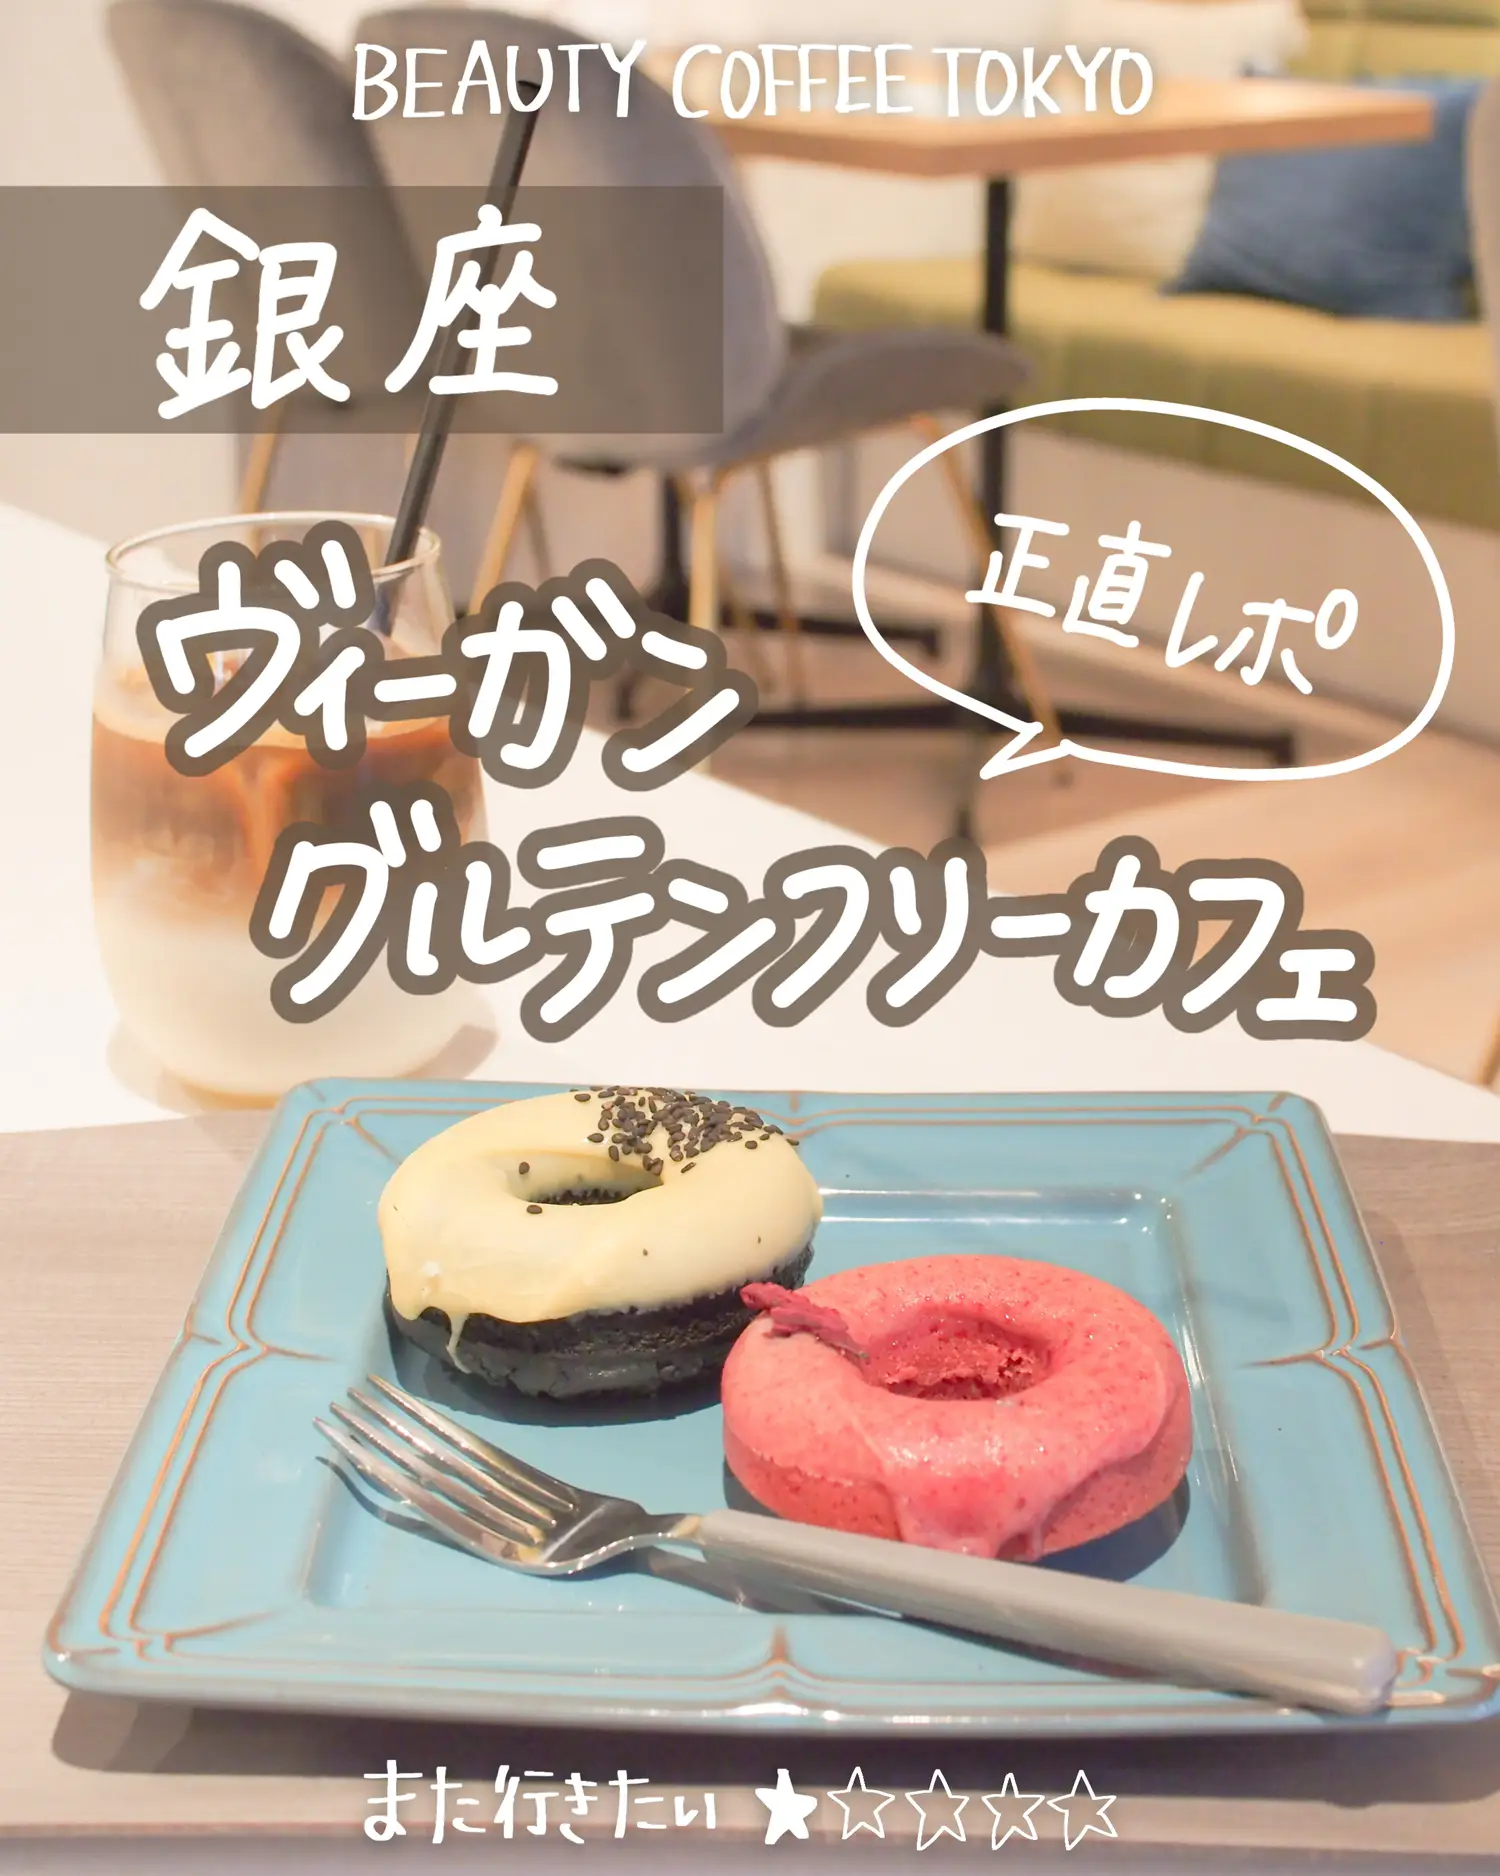 銀座 ヴィーガン グルテンフリー Beauty Coffee Tokyo しおり 東京カフェ巡りが投稿したフォトブック Lemon8